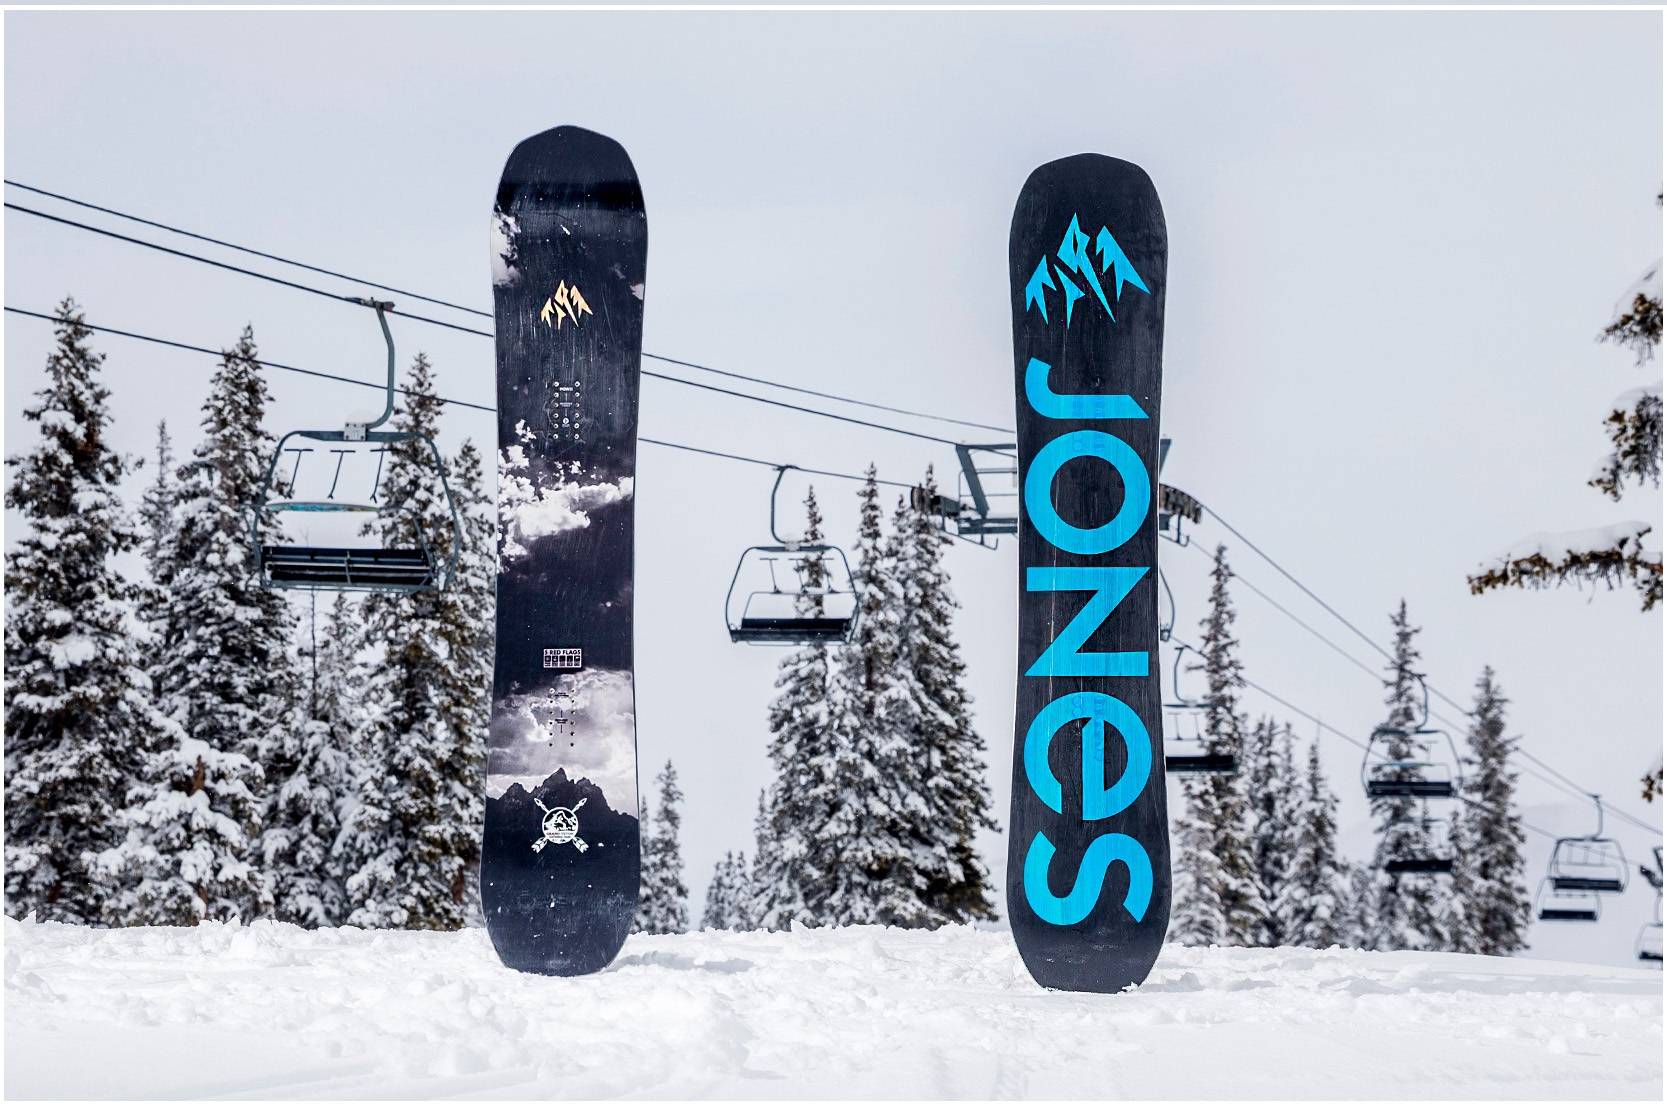 Выбираем хороший сноуборд в 2021 – рекомендации для начинающих